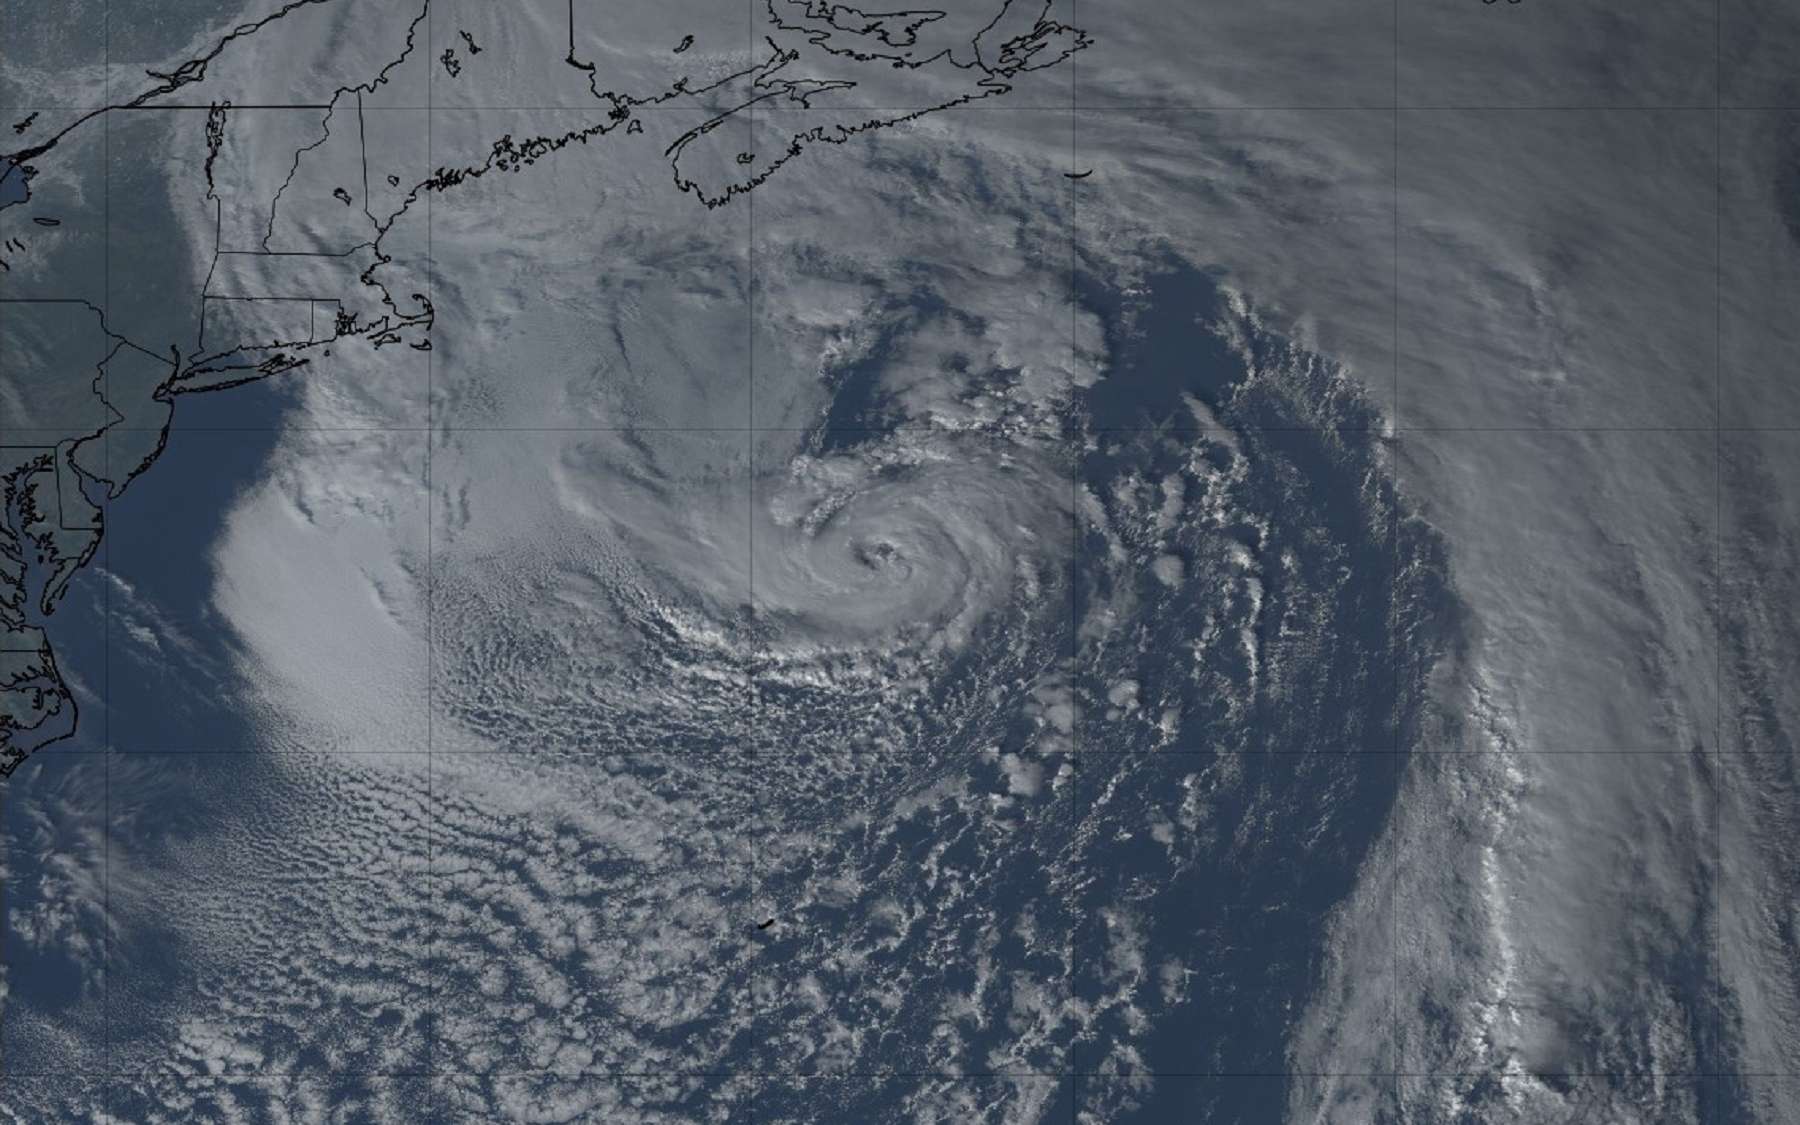 Les météorologues n'en ont pas cru leurs yeux : un enroulement typique d’un ouragan s'est formé en janvier !